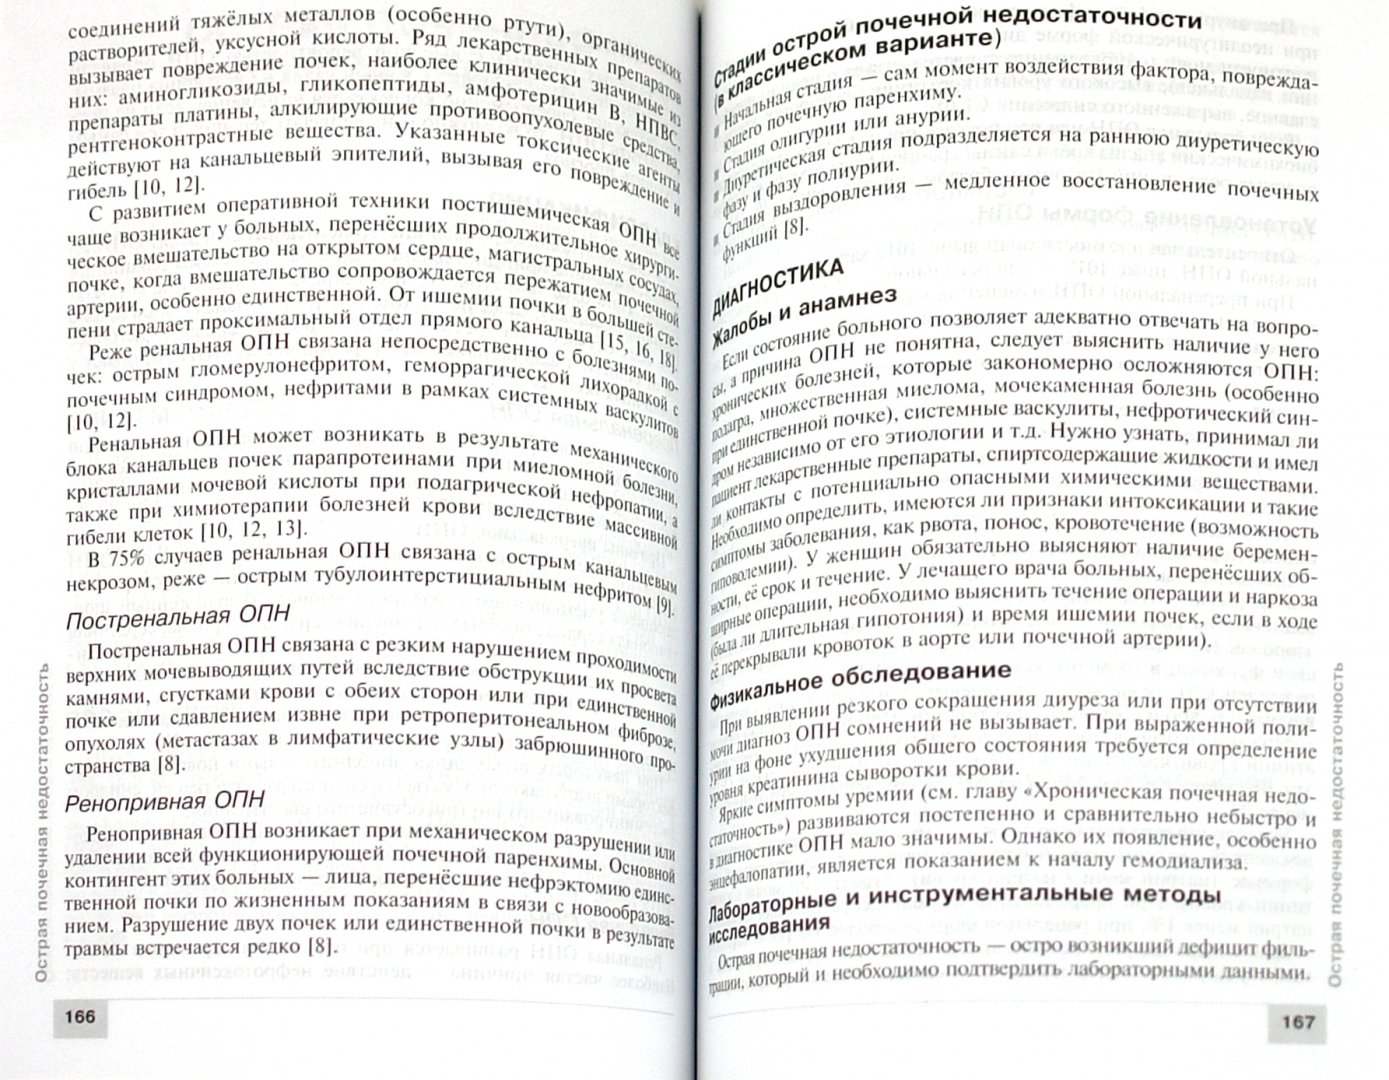 Иллюстрация 1 из 15 для Урология: клинические рекомендации | Лабиринт - книги. Источник: Лабиринт